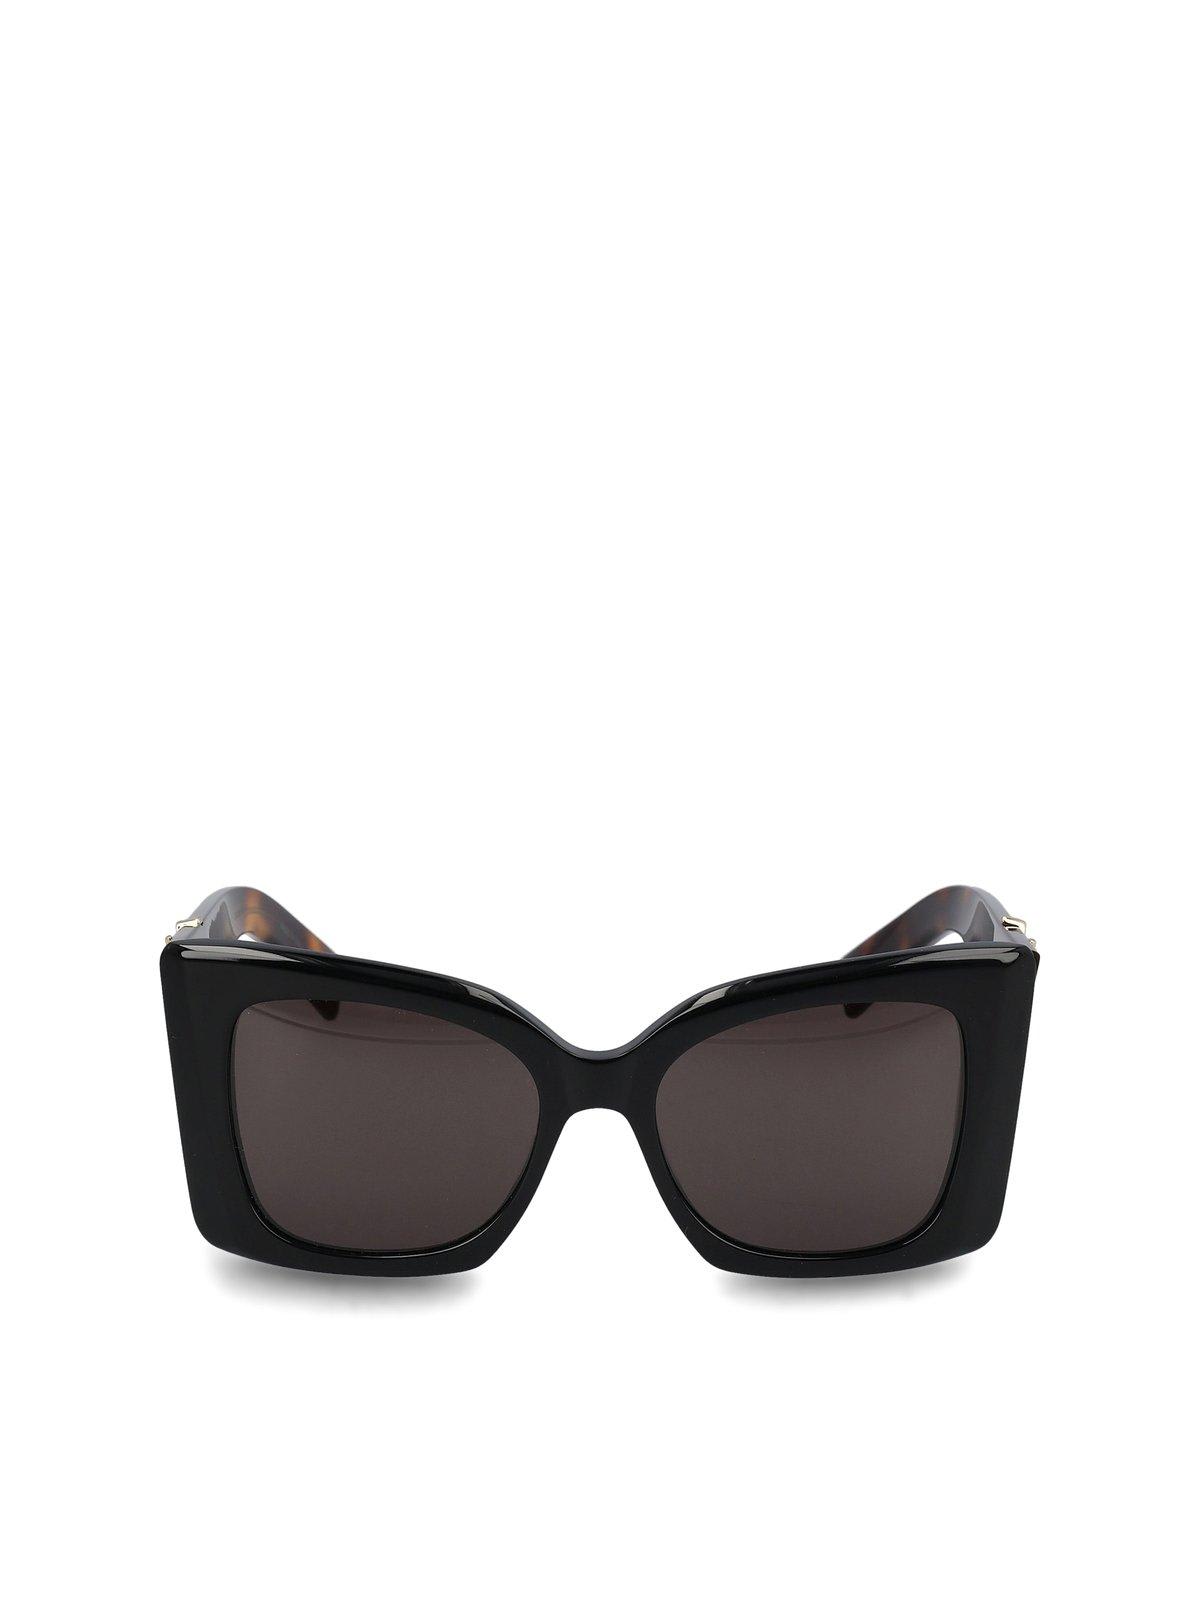 Saint Laurent Square Frame Sunglasses In Black